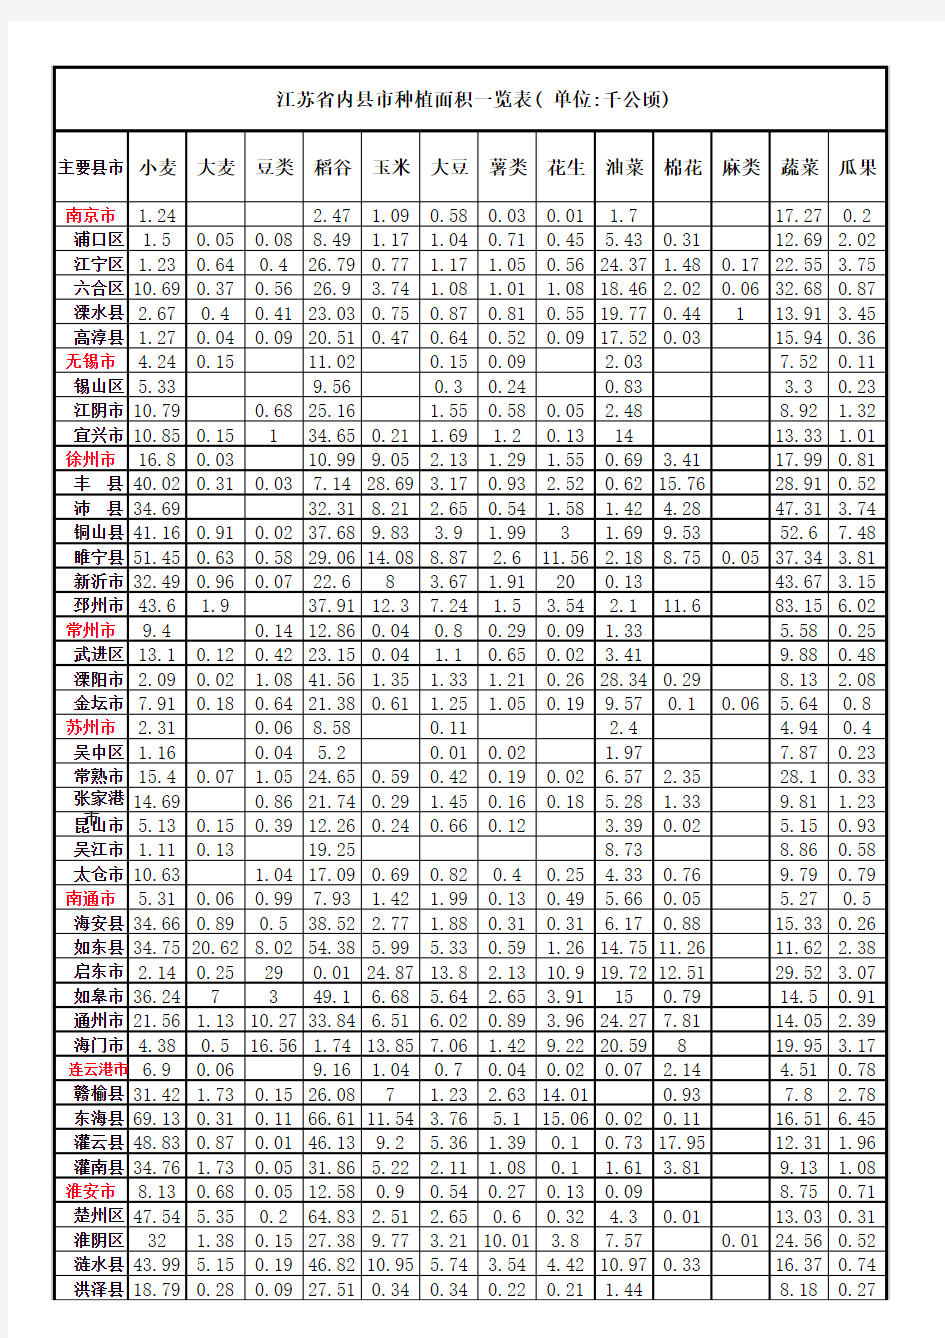 江苏省县市级种植面积一览表